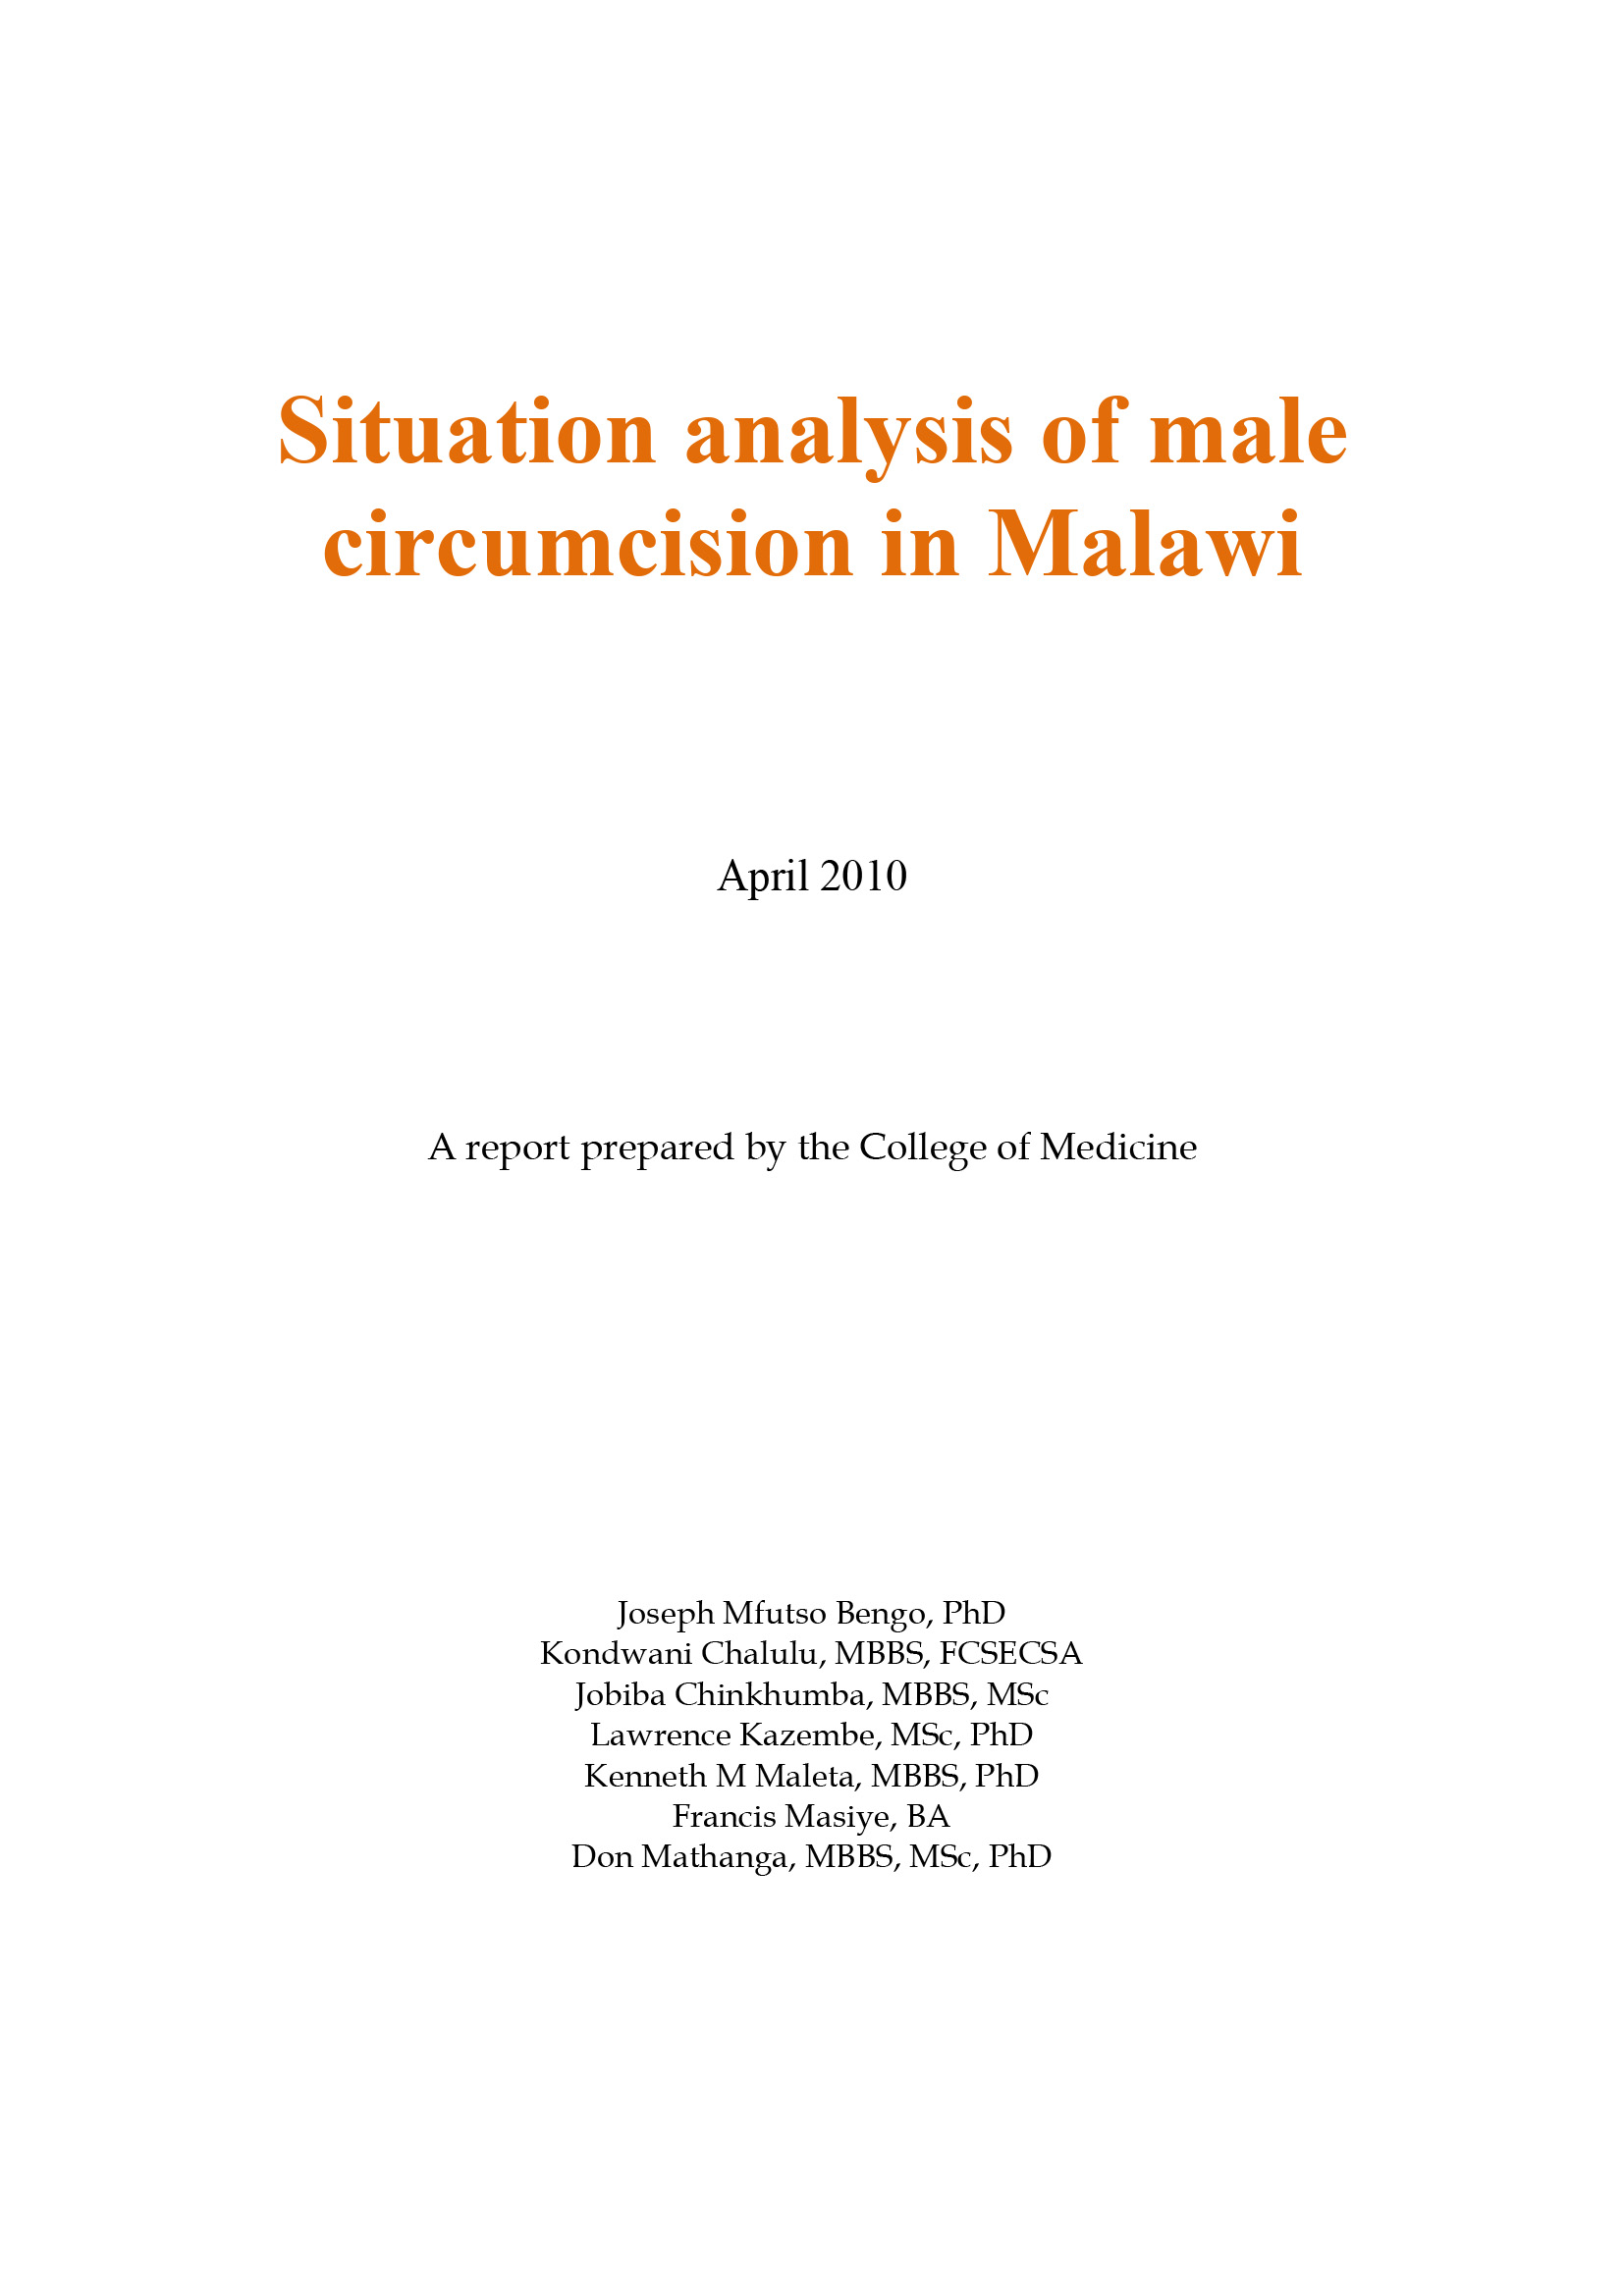 Analyse de la situation de la circoncision masculine au Malawi - couverture